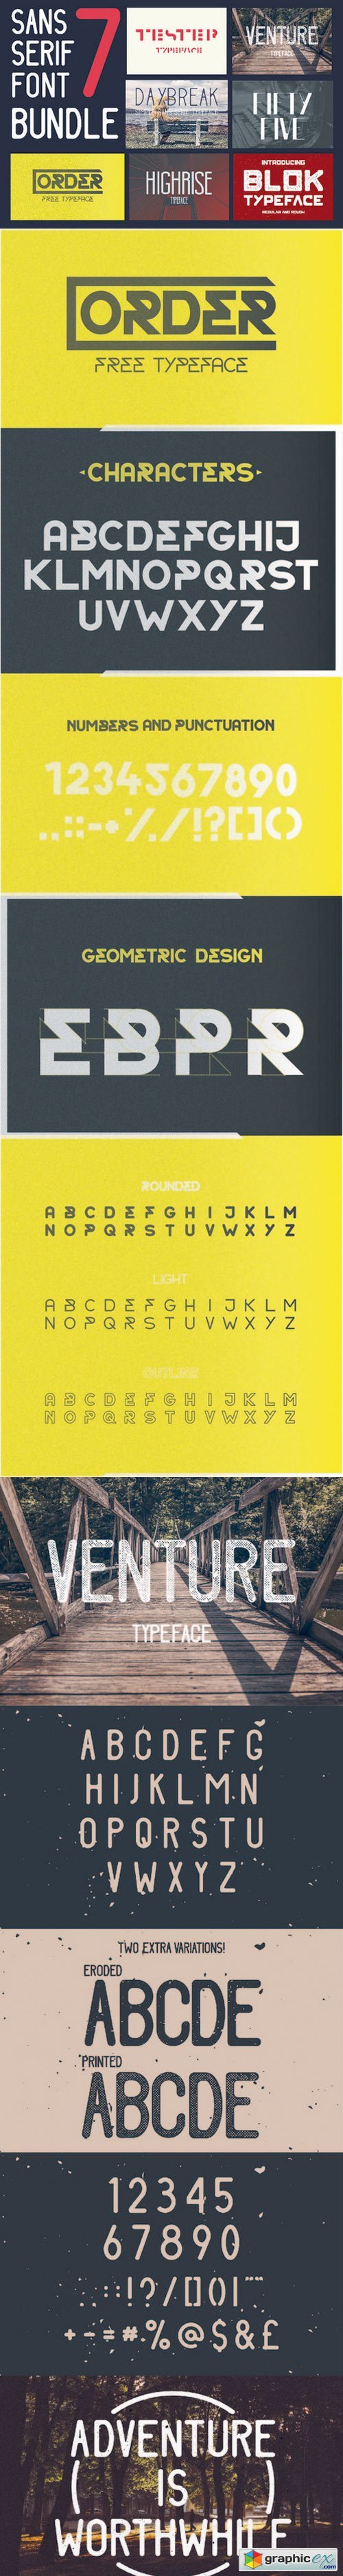 Sans Serif font bundle | 7 typefaces